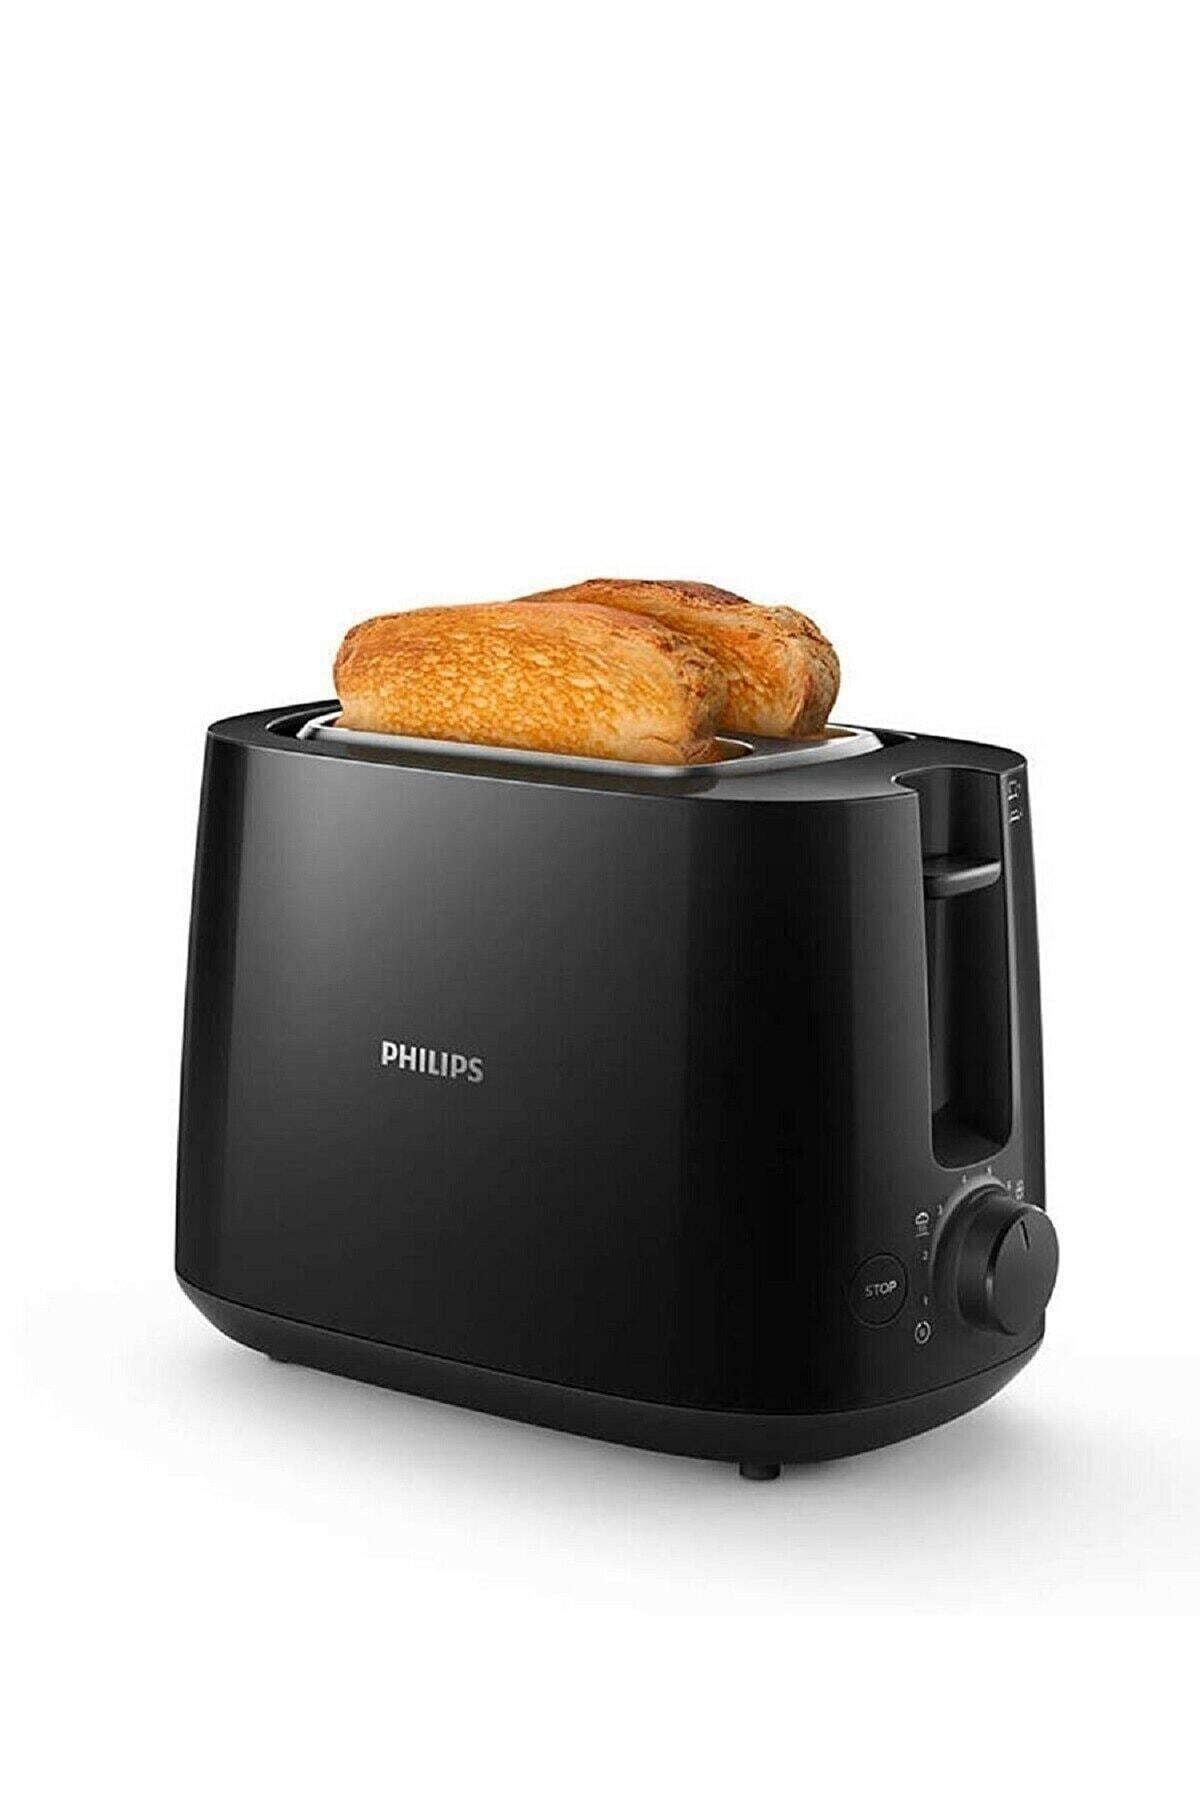 Philips Ekmek Kızartma Makinası - Toaster X+ Plus